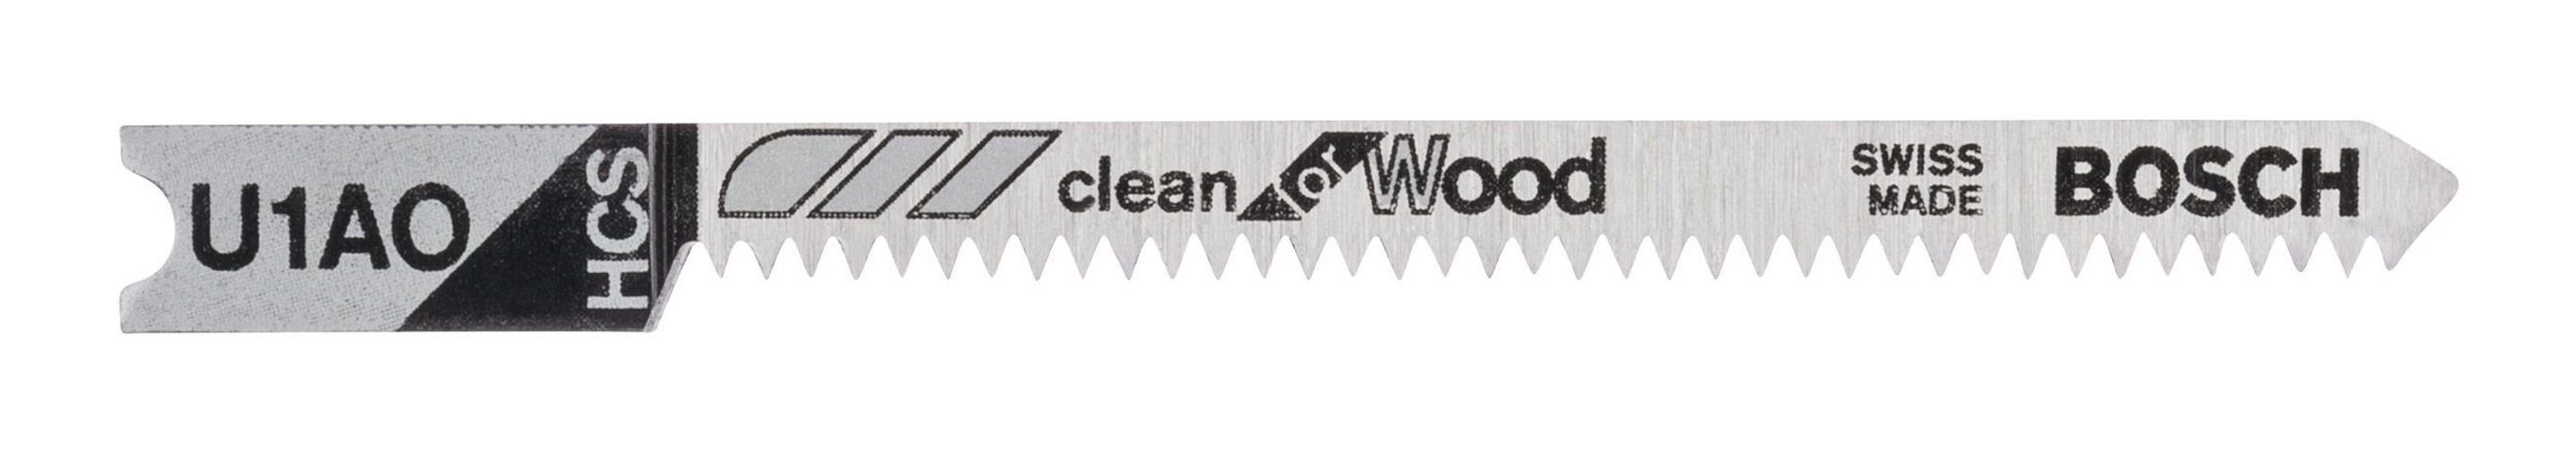 BOSCH Stichsägeblatt (3 Stück), U 1 AO Clean for Wood - 3er-Pack